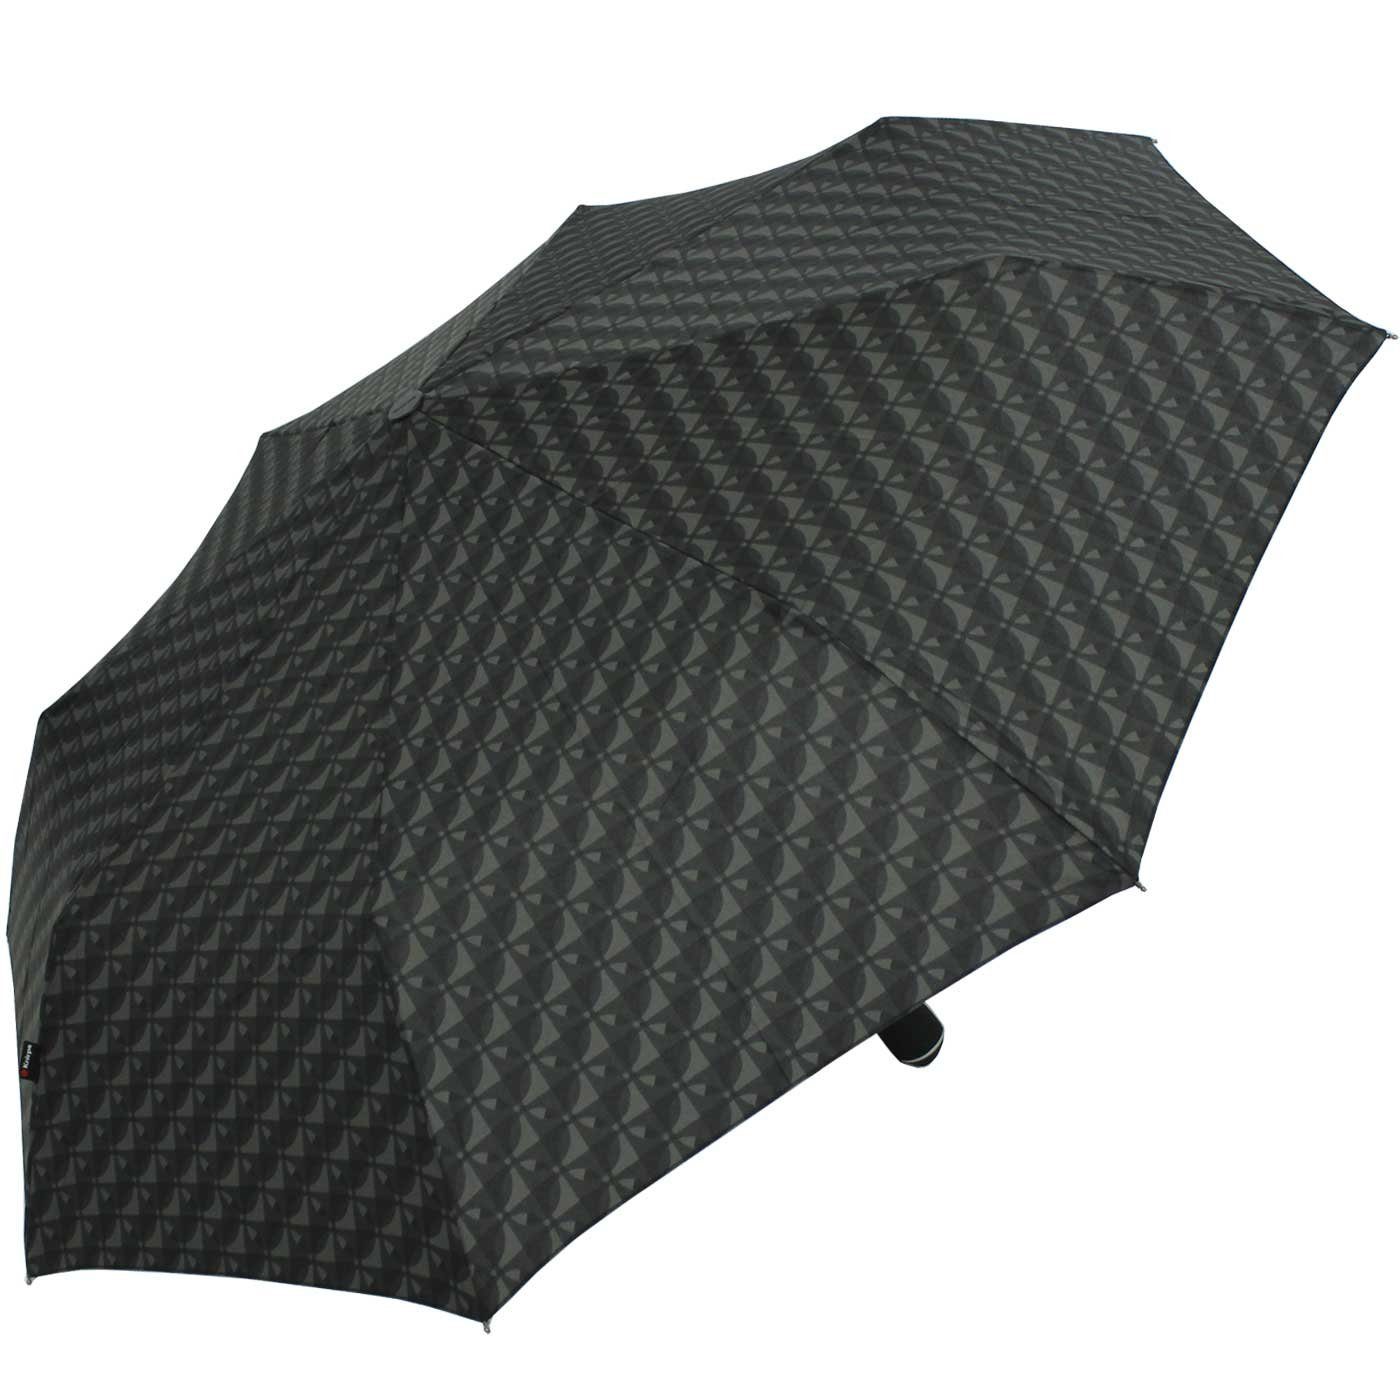 Duomatic große, Auf-Zu-Automatik Knirps® Nimbus black, mit Begleiter Large Taschenregenschirm - der stabile